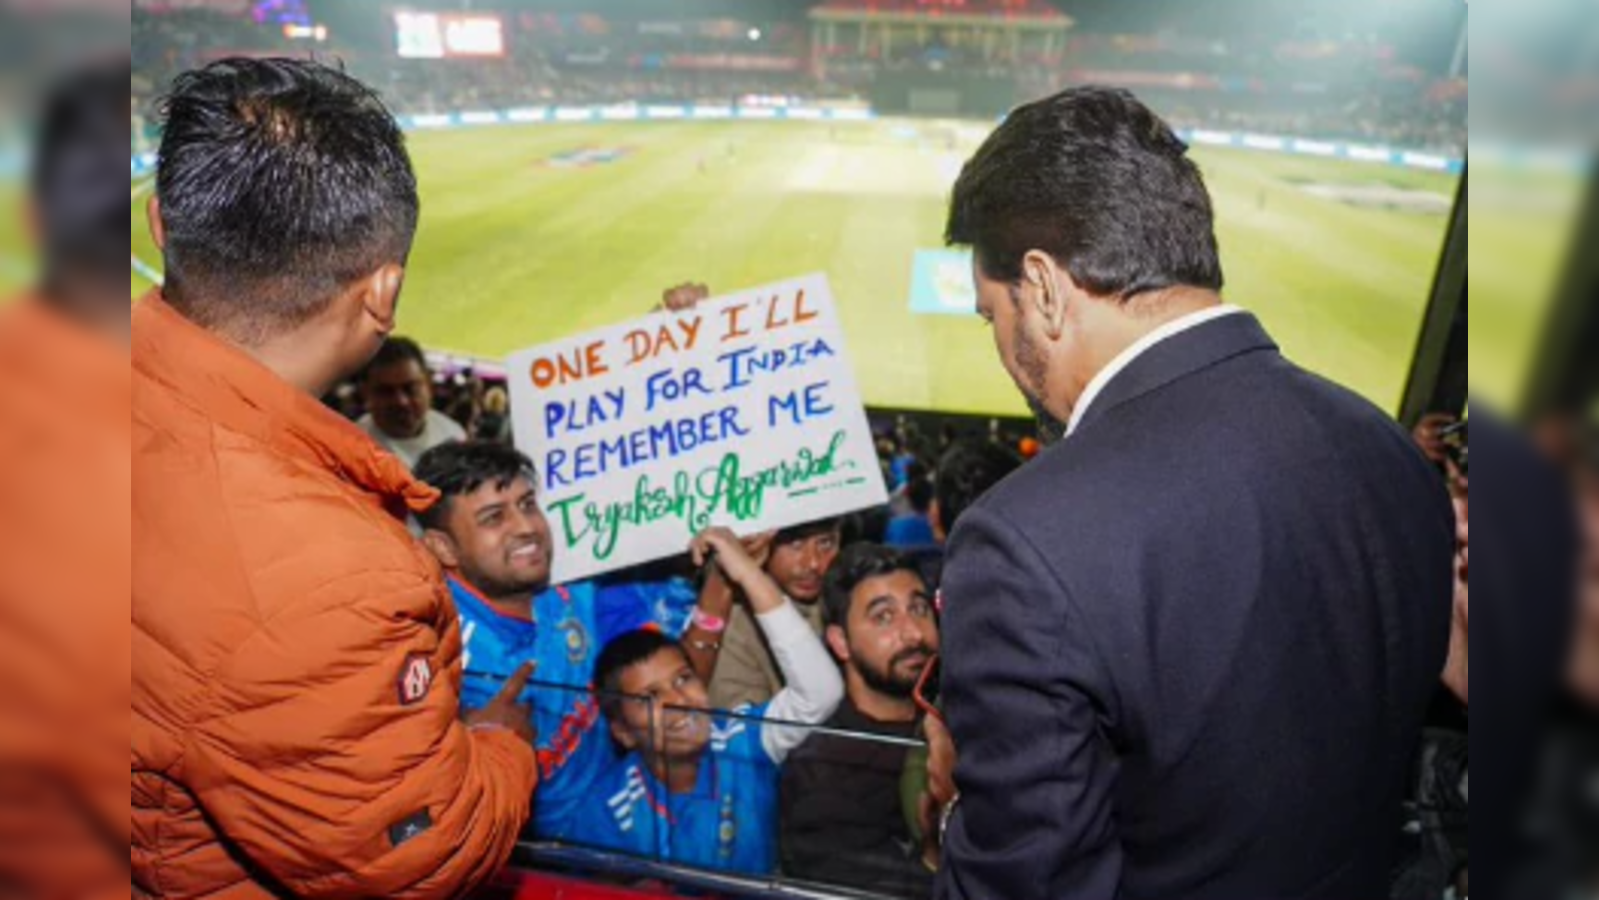 Ready To :Swiggy's Hilarious Take On Team India's Orange